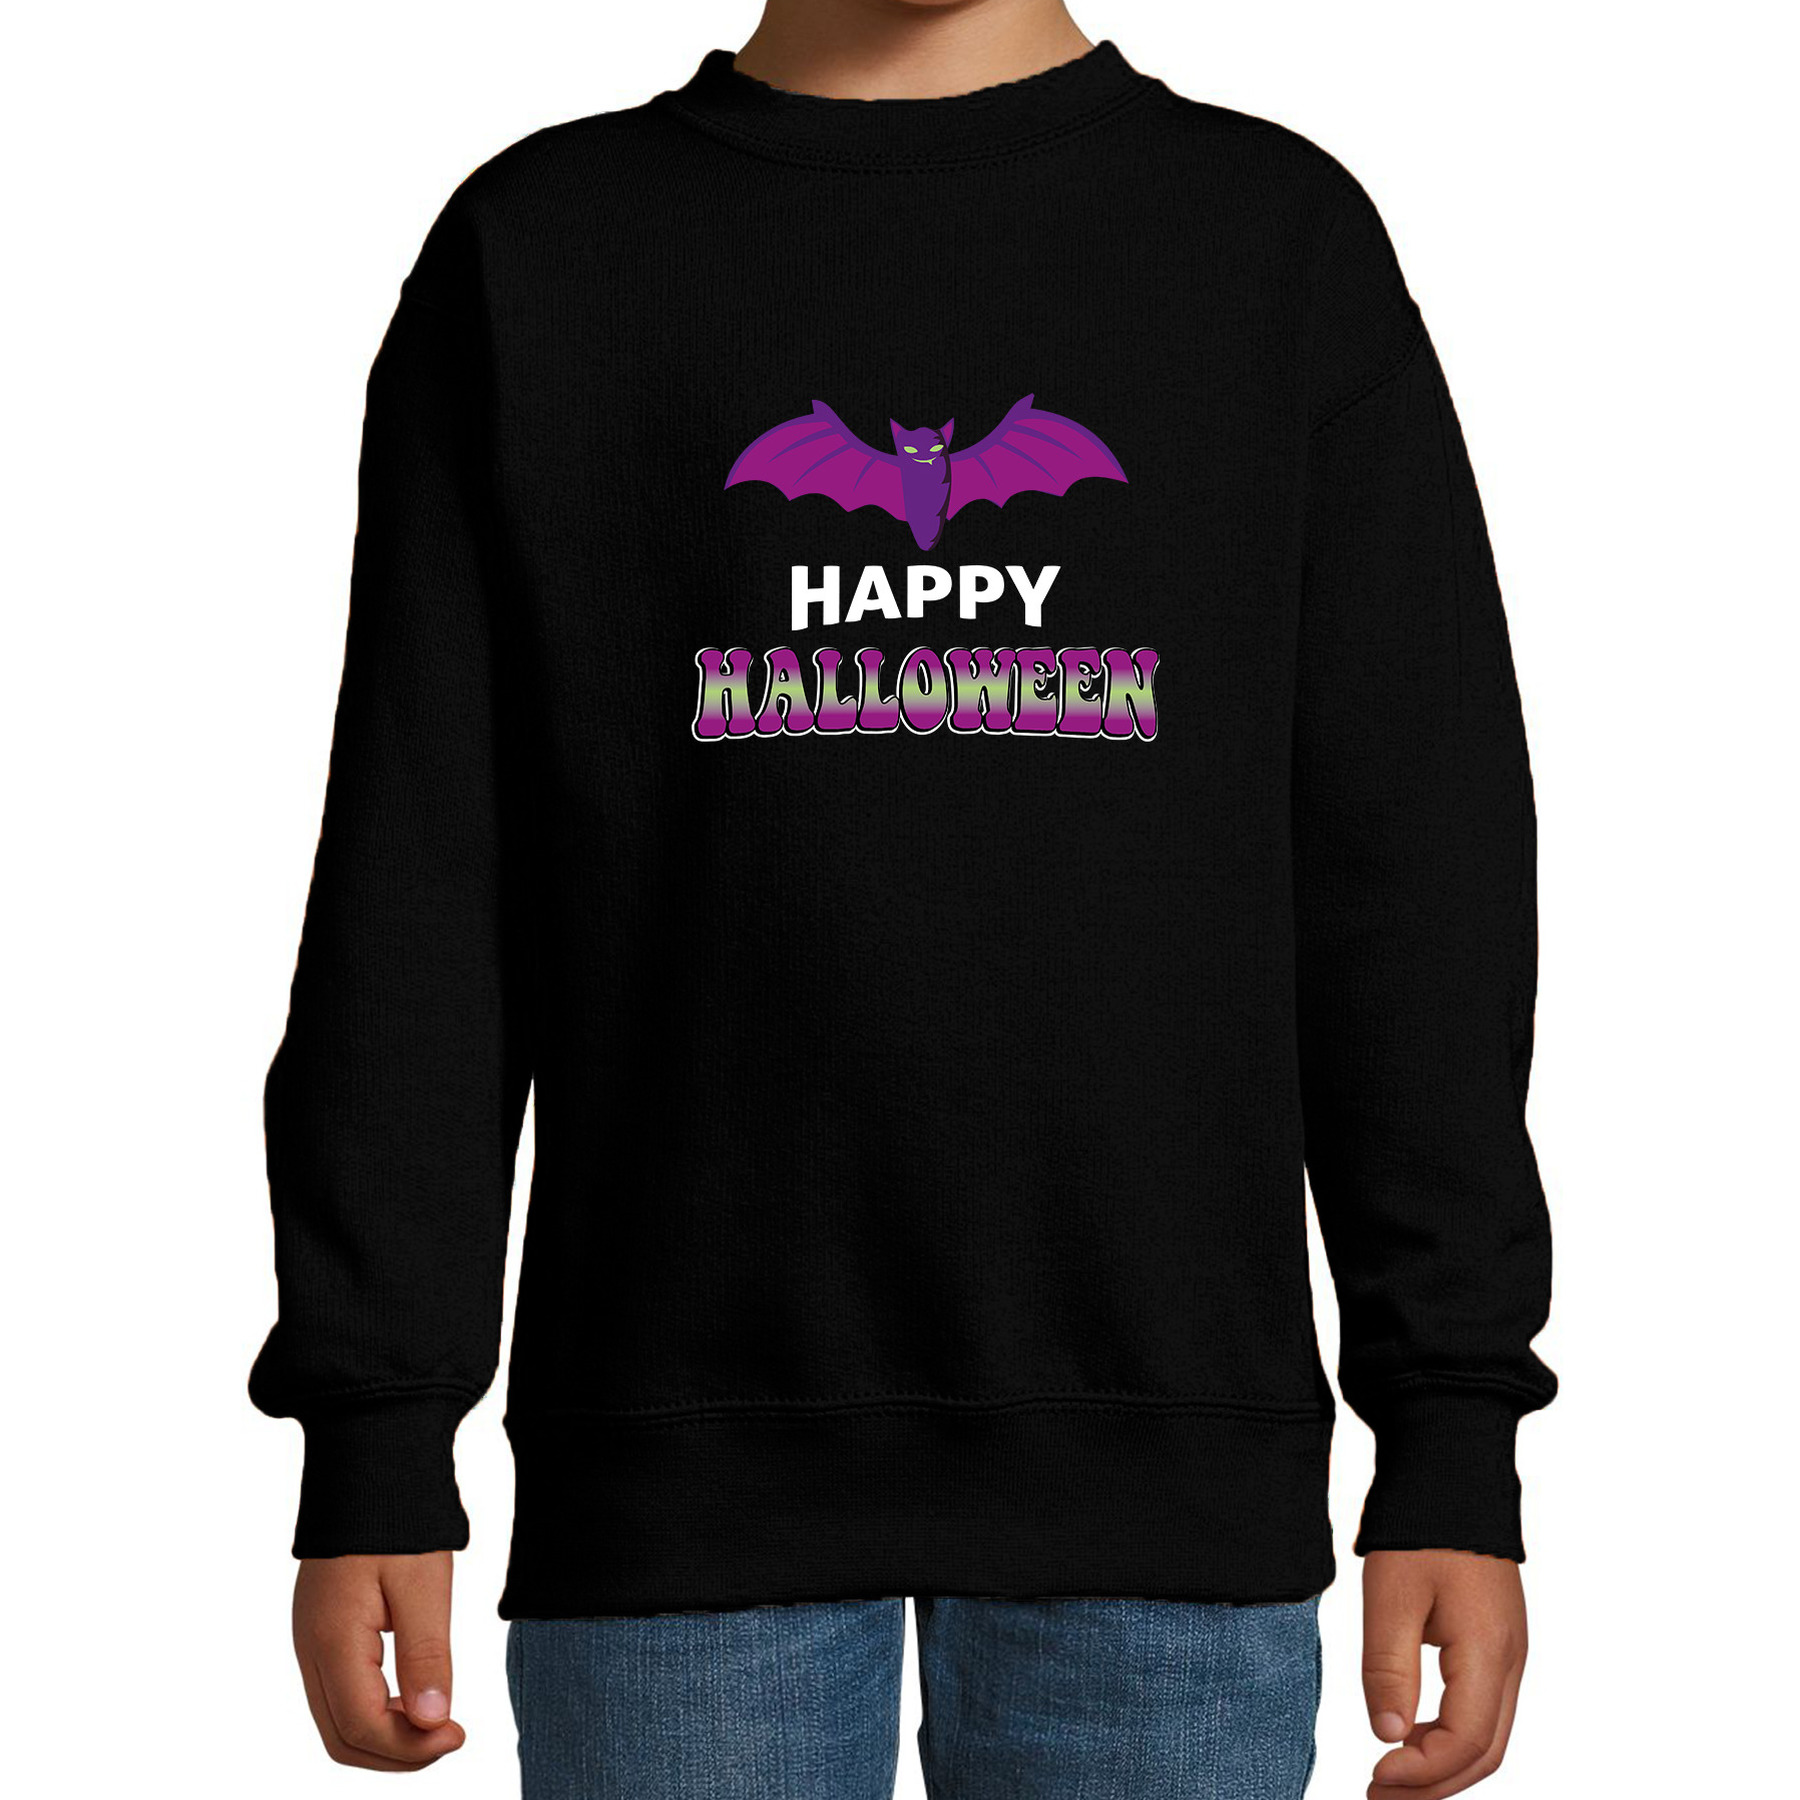 Vleermuis-happy halloween horror trui zwart voor kinderen verkleed sweater-kostuum